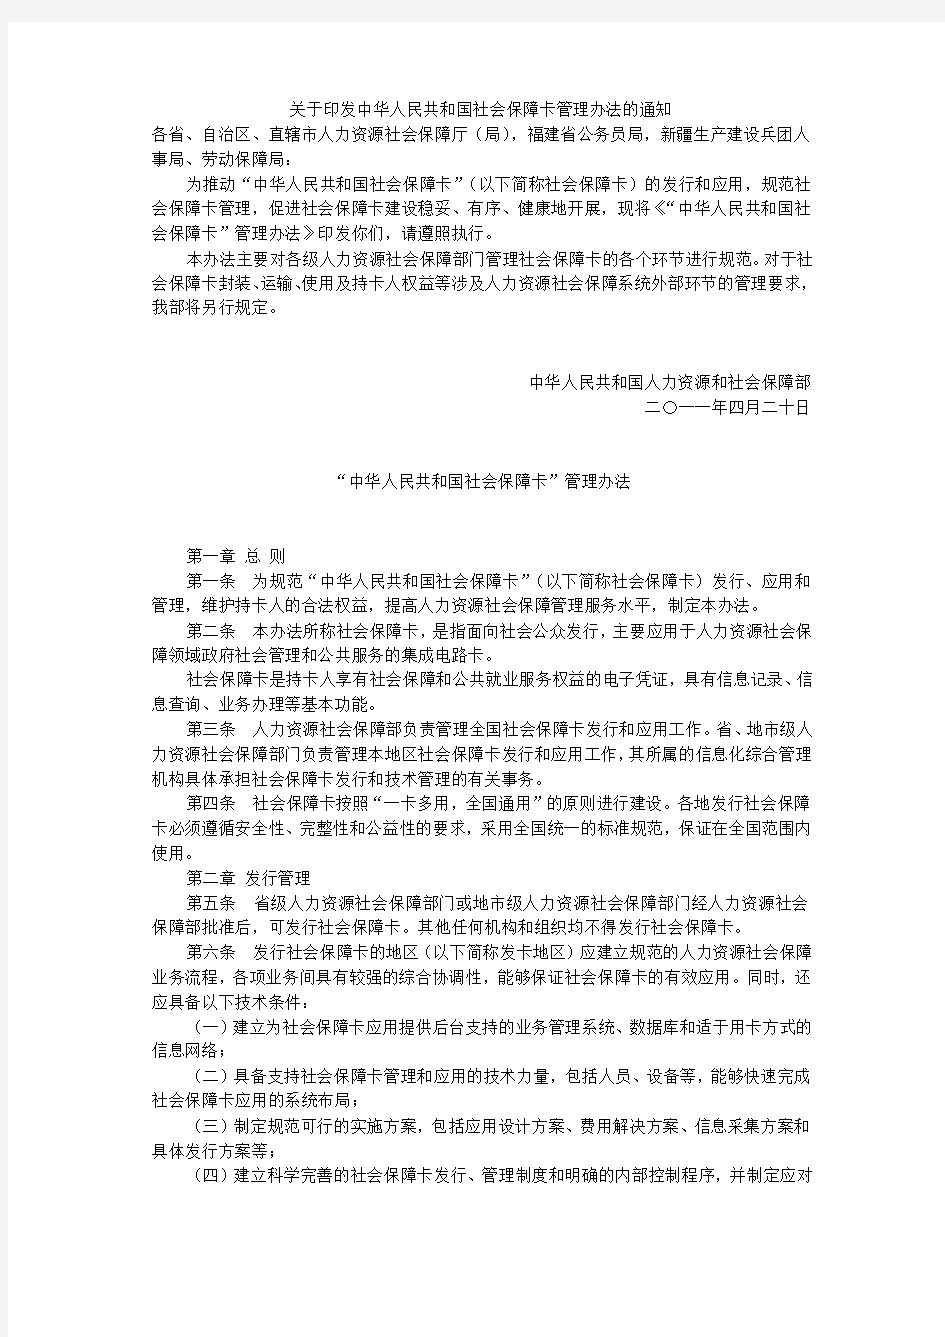 关于印发中华人民共和国社会保障卡管理办法的通知